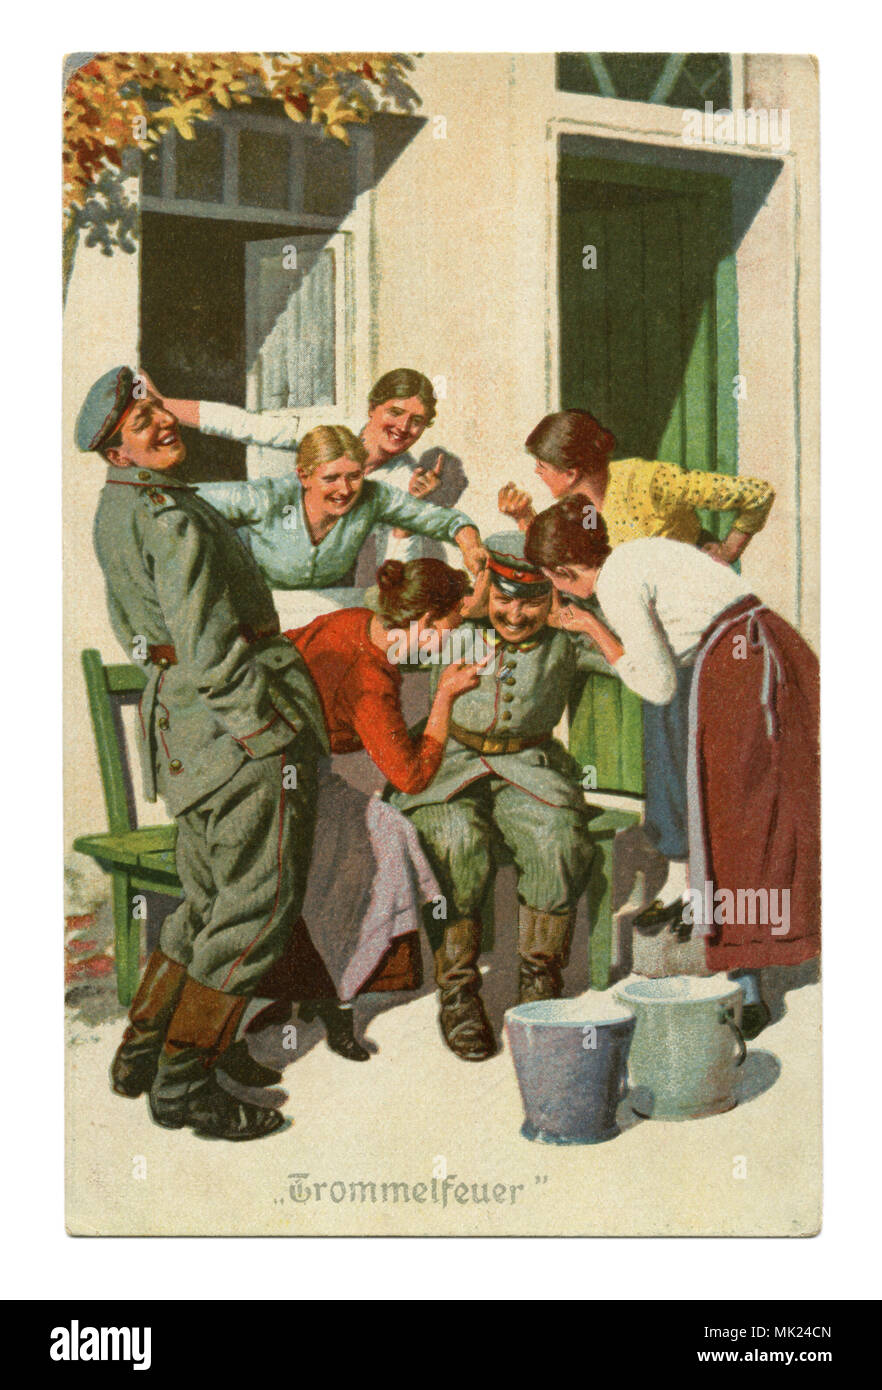 Ancienne carte postale militaire allemand :-série humoristique 'Toujours' professionnel, № 4 feu défensives". La première guerre mondiale 1914-1918, Allemagne Banque D'Images